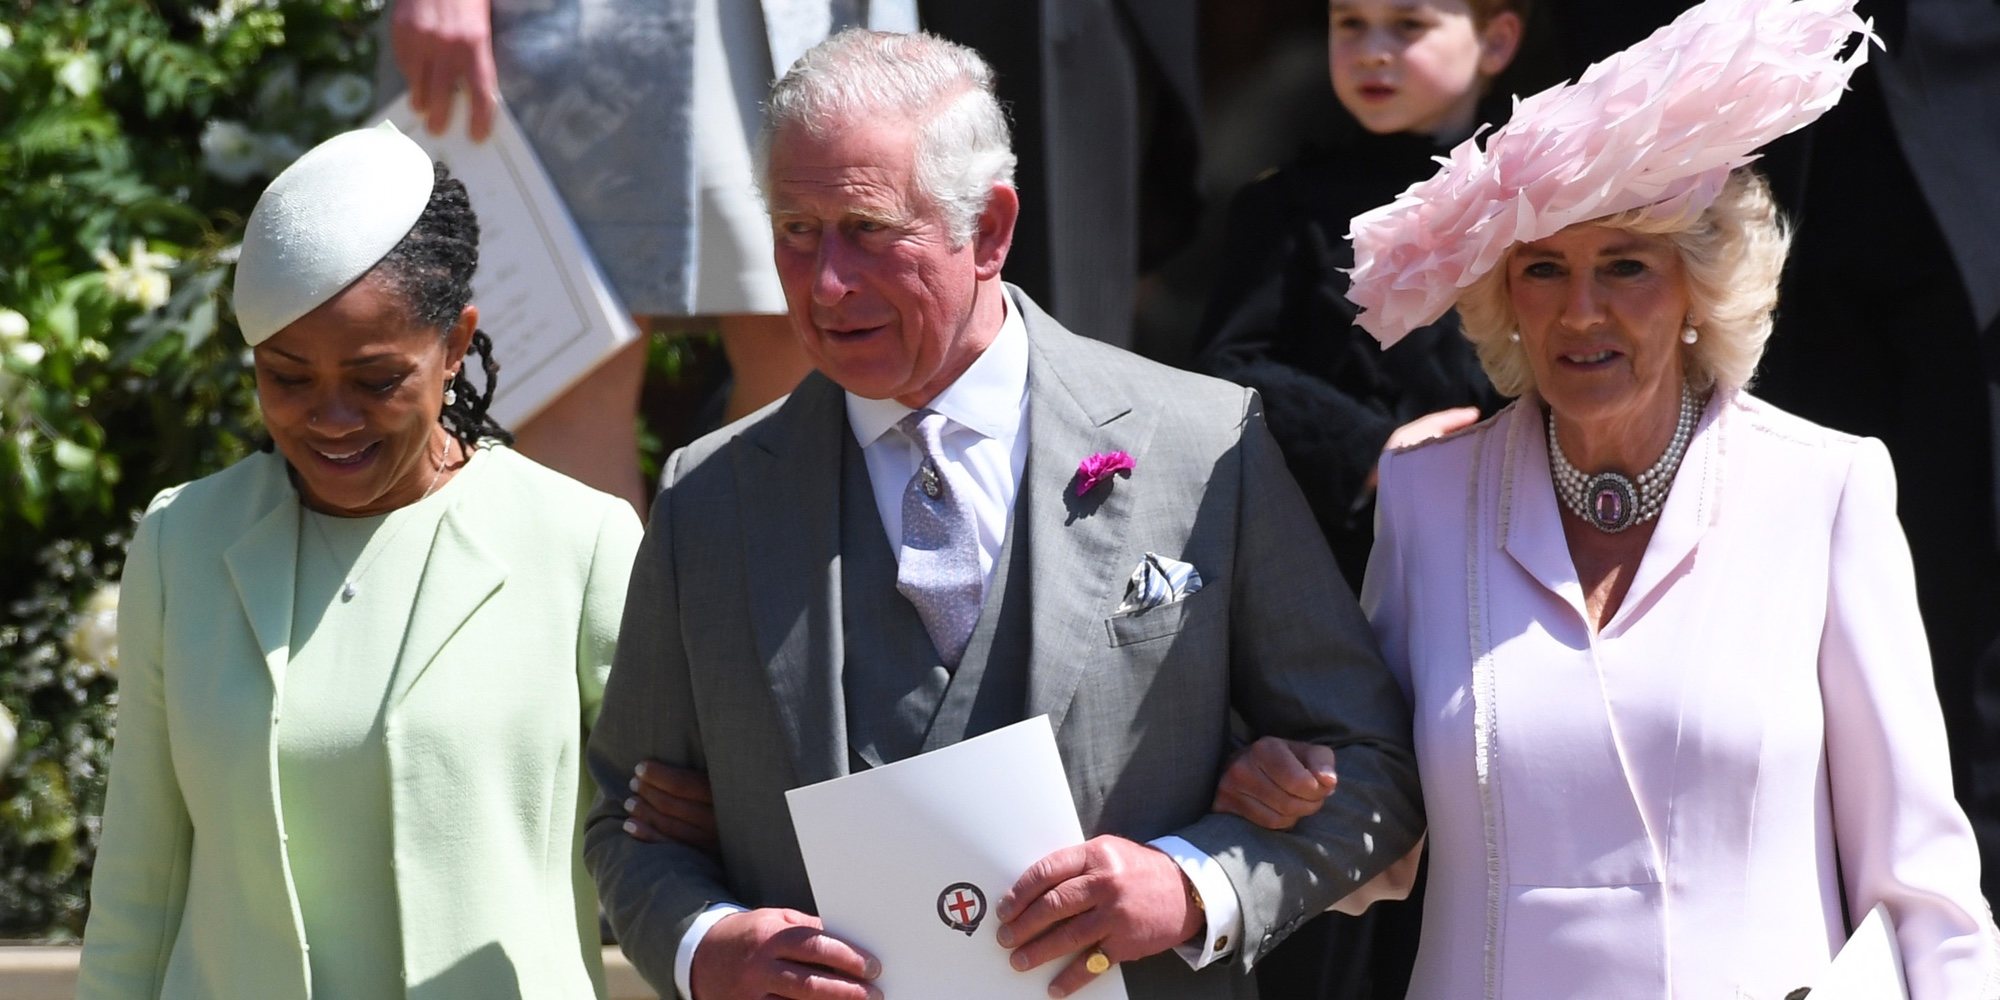 El Príncipe Carlos y sus bromas, protagonistas del almuerzo tras la boda del Príncipe Harry y Meghan Markle